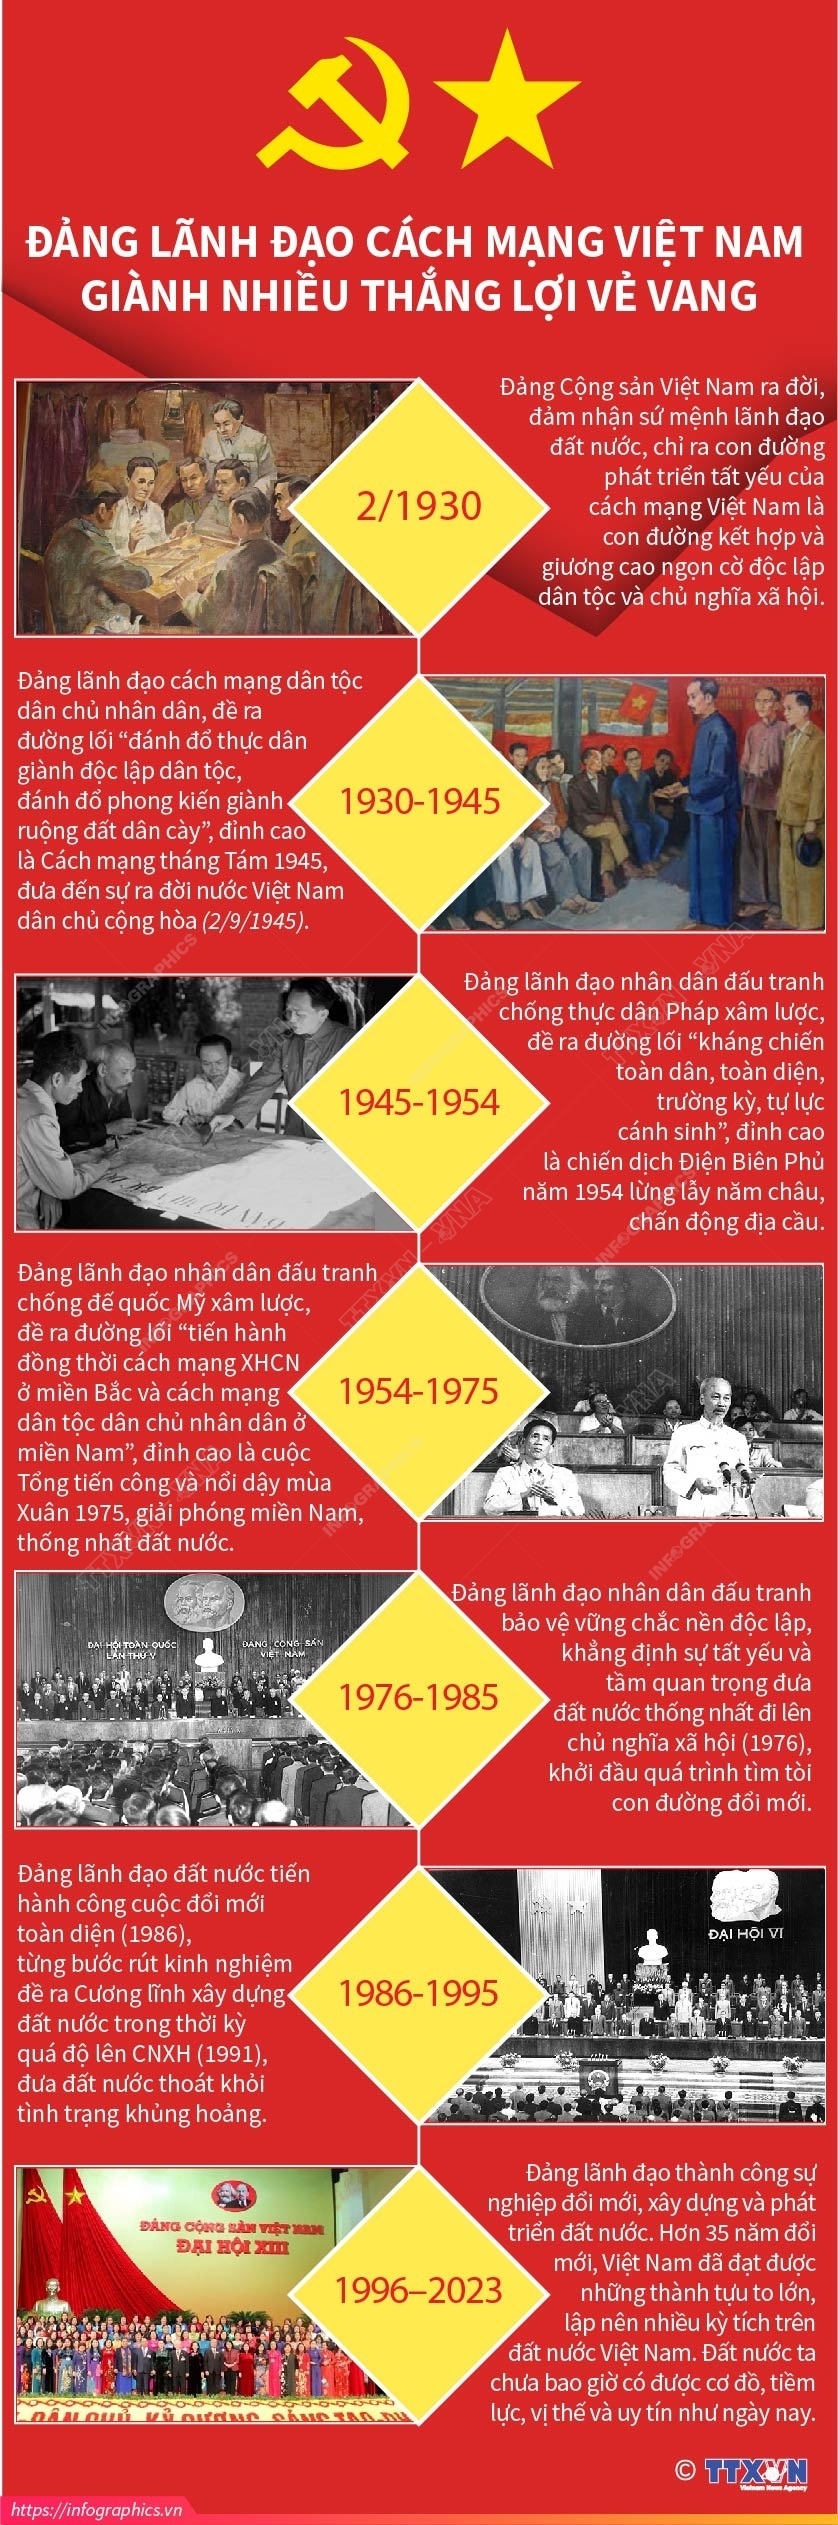 Tư tưởng Hồ Chí Minh về xây dựng Đảng và sự vận dụng trong tình hình hiện nay